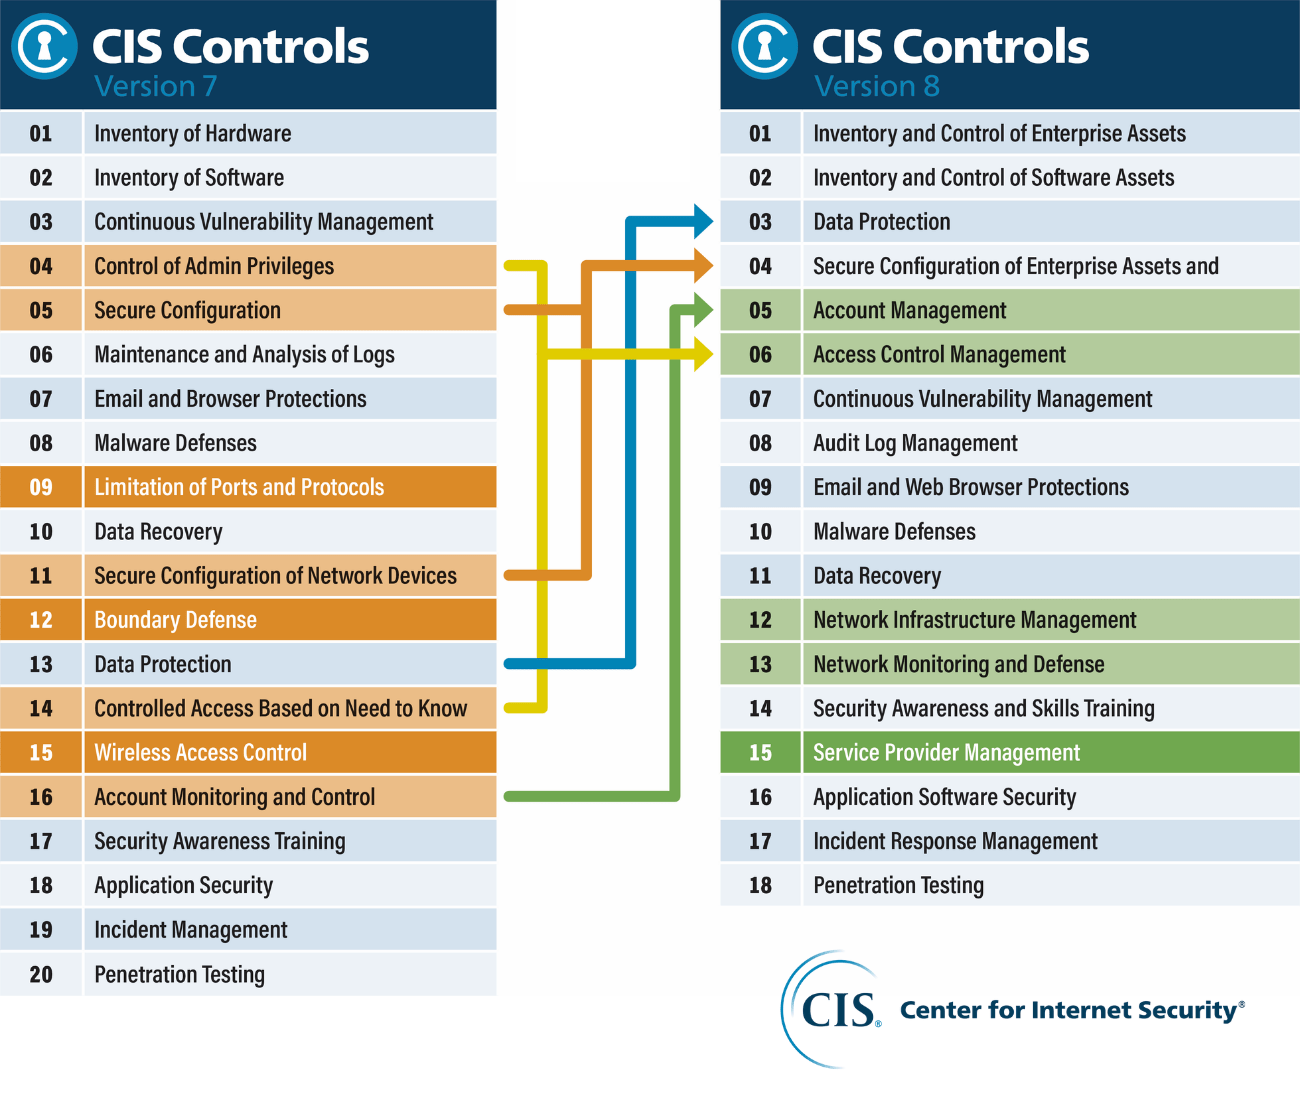 Comparison table of CIS Controls Version 7 vs. CIS Controls Version 8